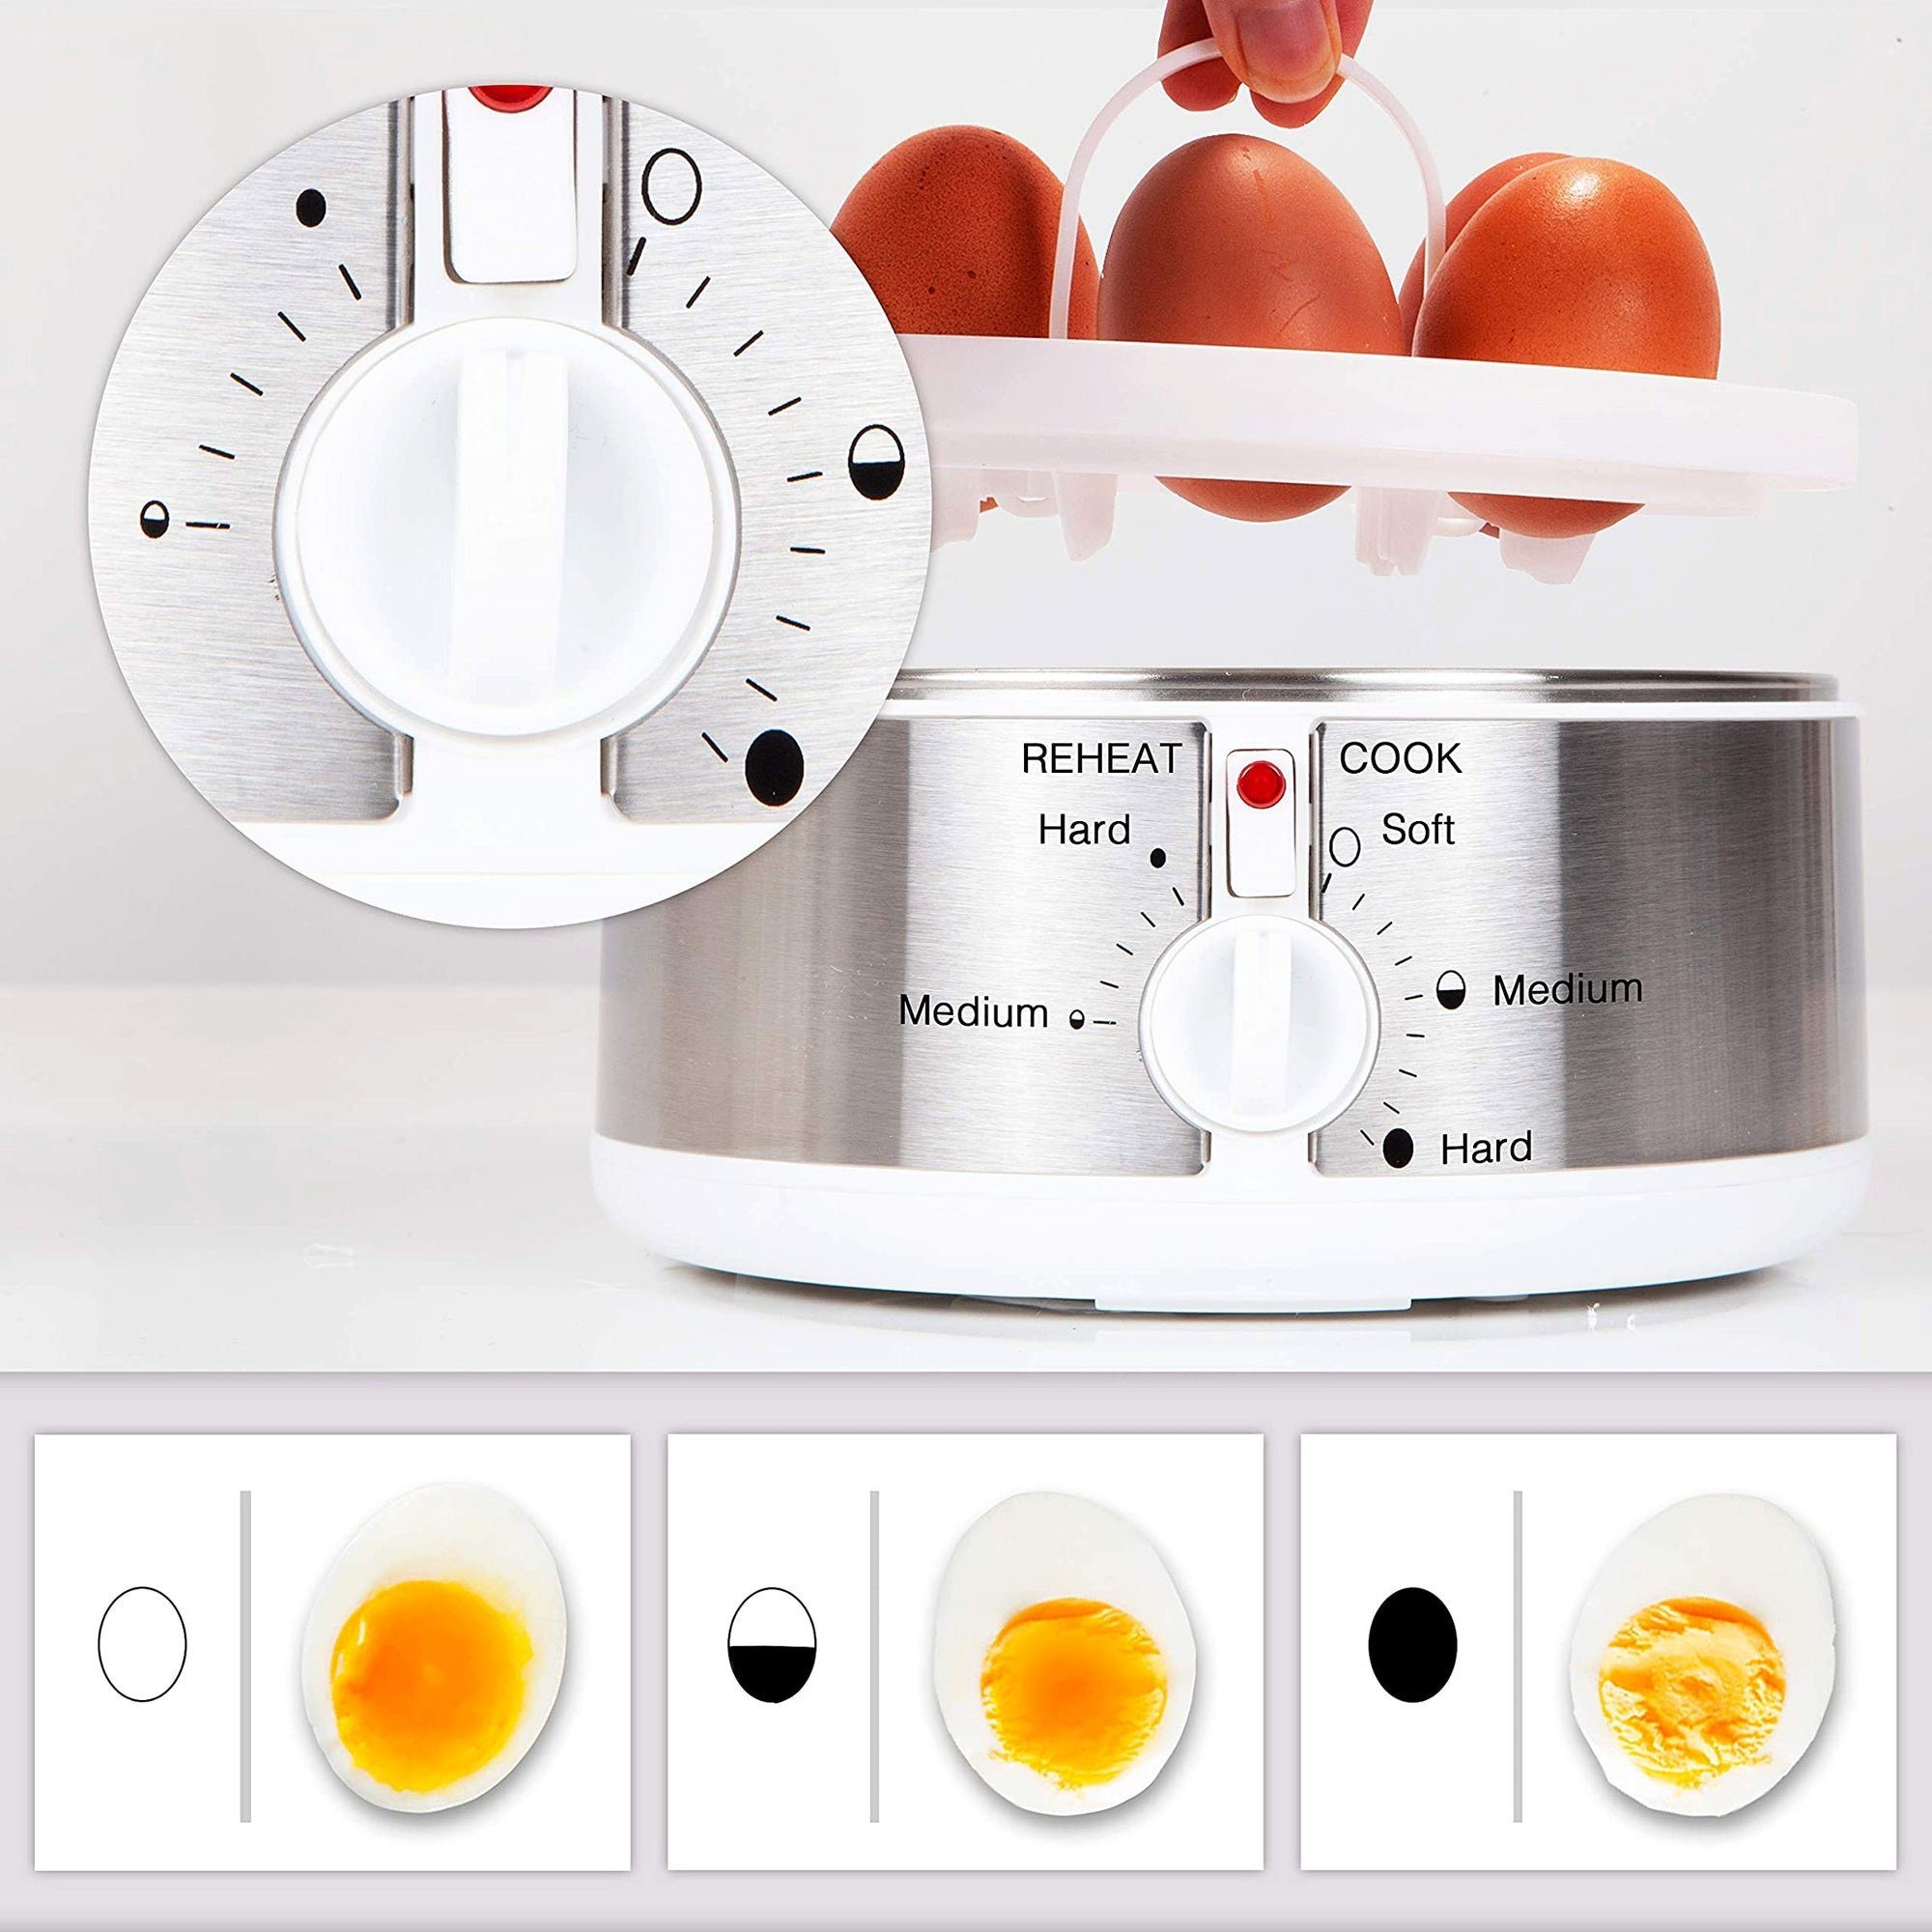 Duronic Eierkocher, EB35 Eierkocher, 7 für Härtegradeinstellung Eier, und bis 1 Timer